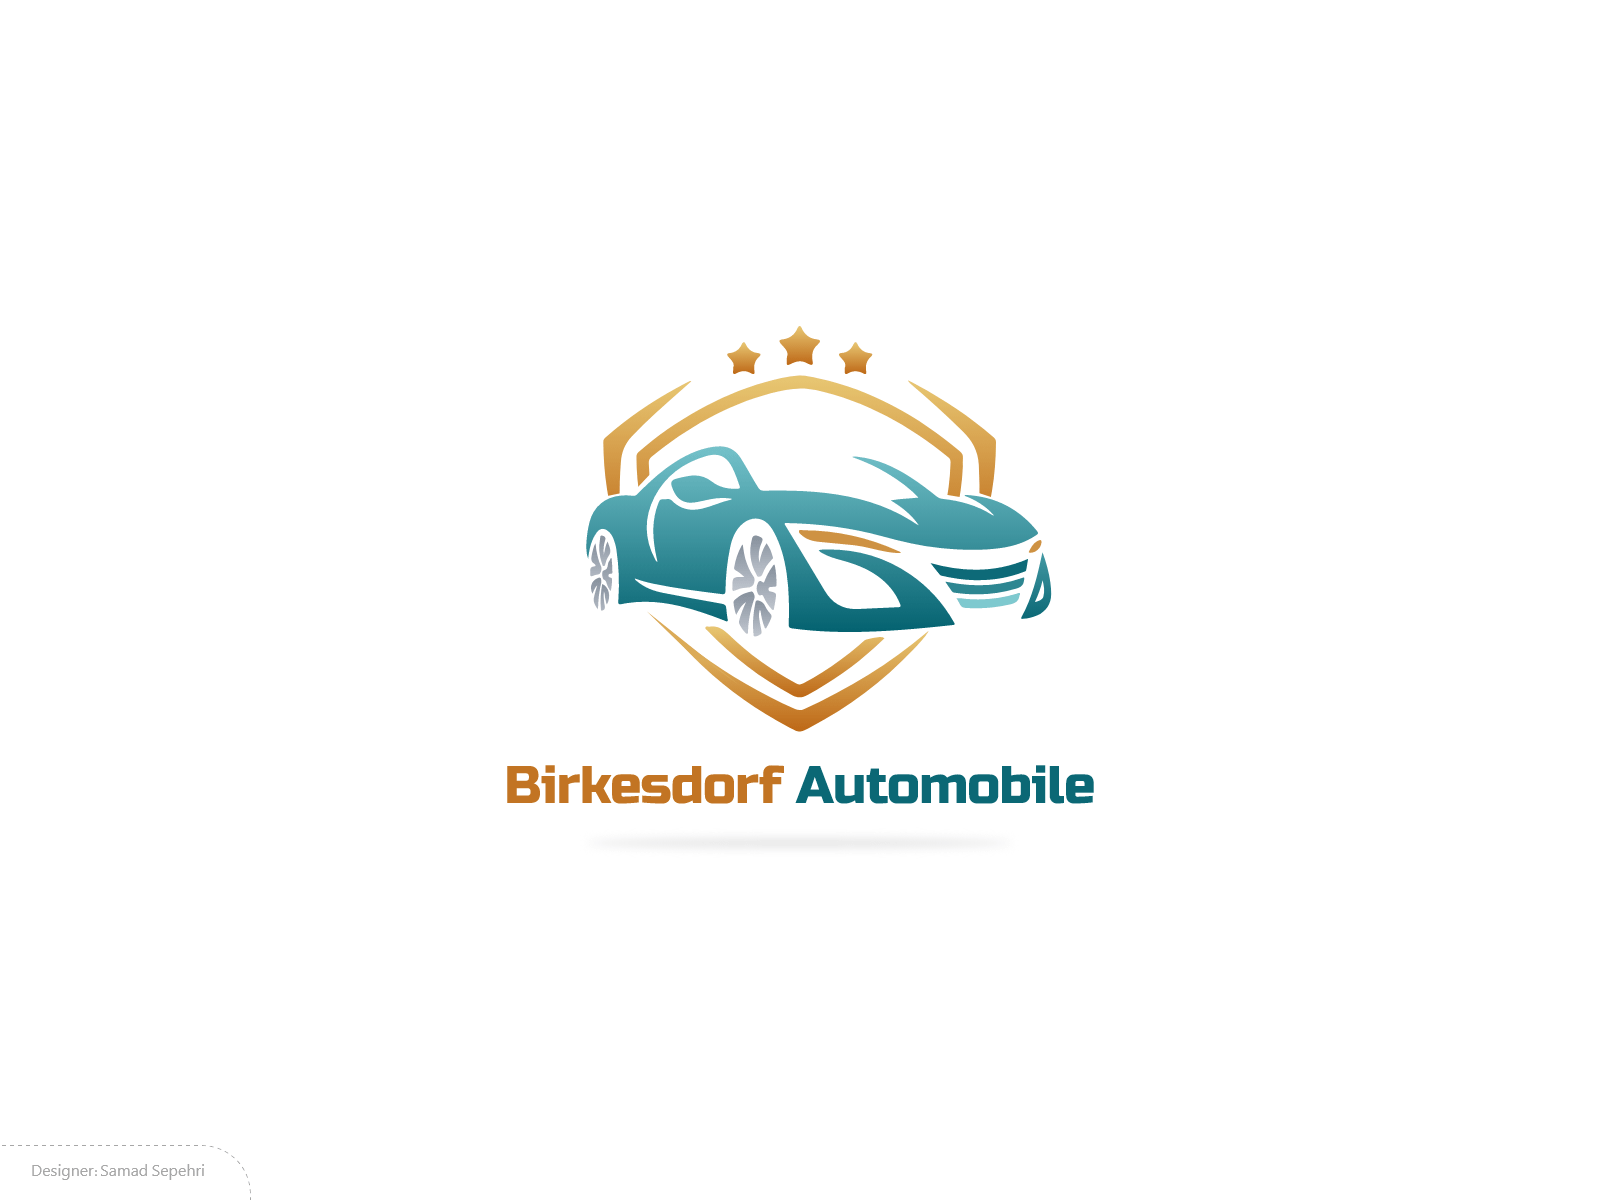 نمونه لوگو طراحی شده برای نمایشگاه خودرو Birkesdorf Automobile